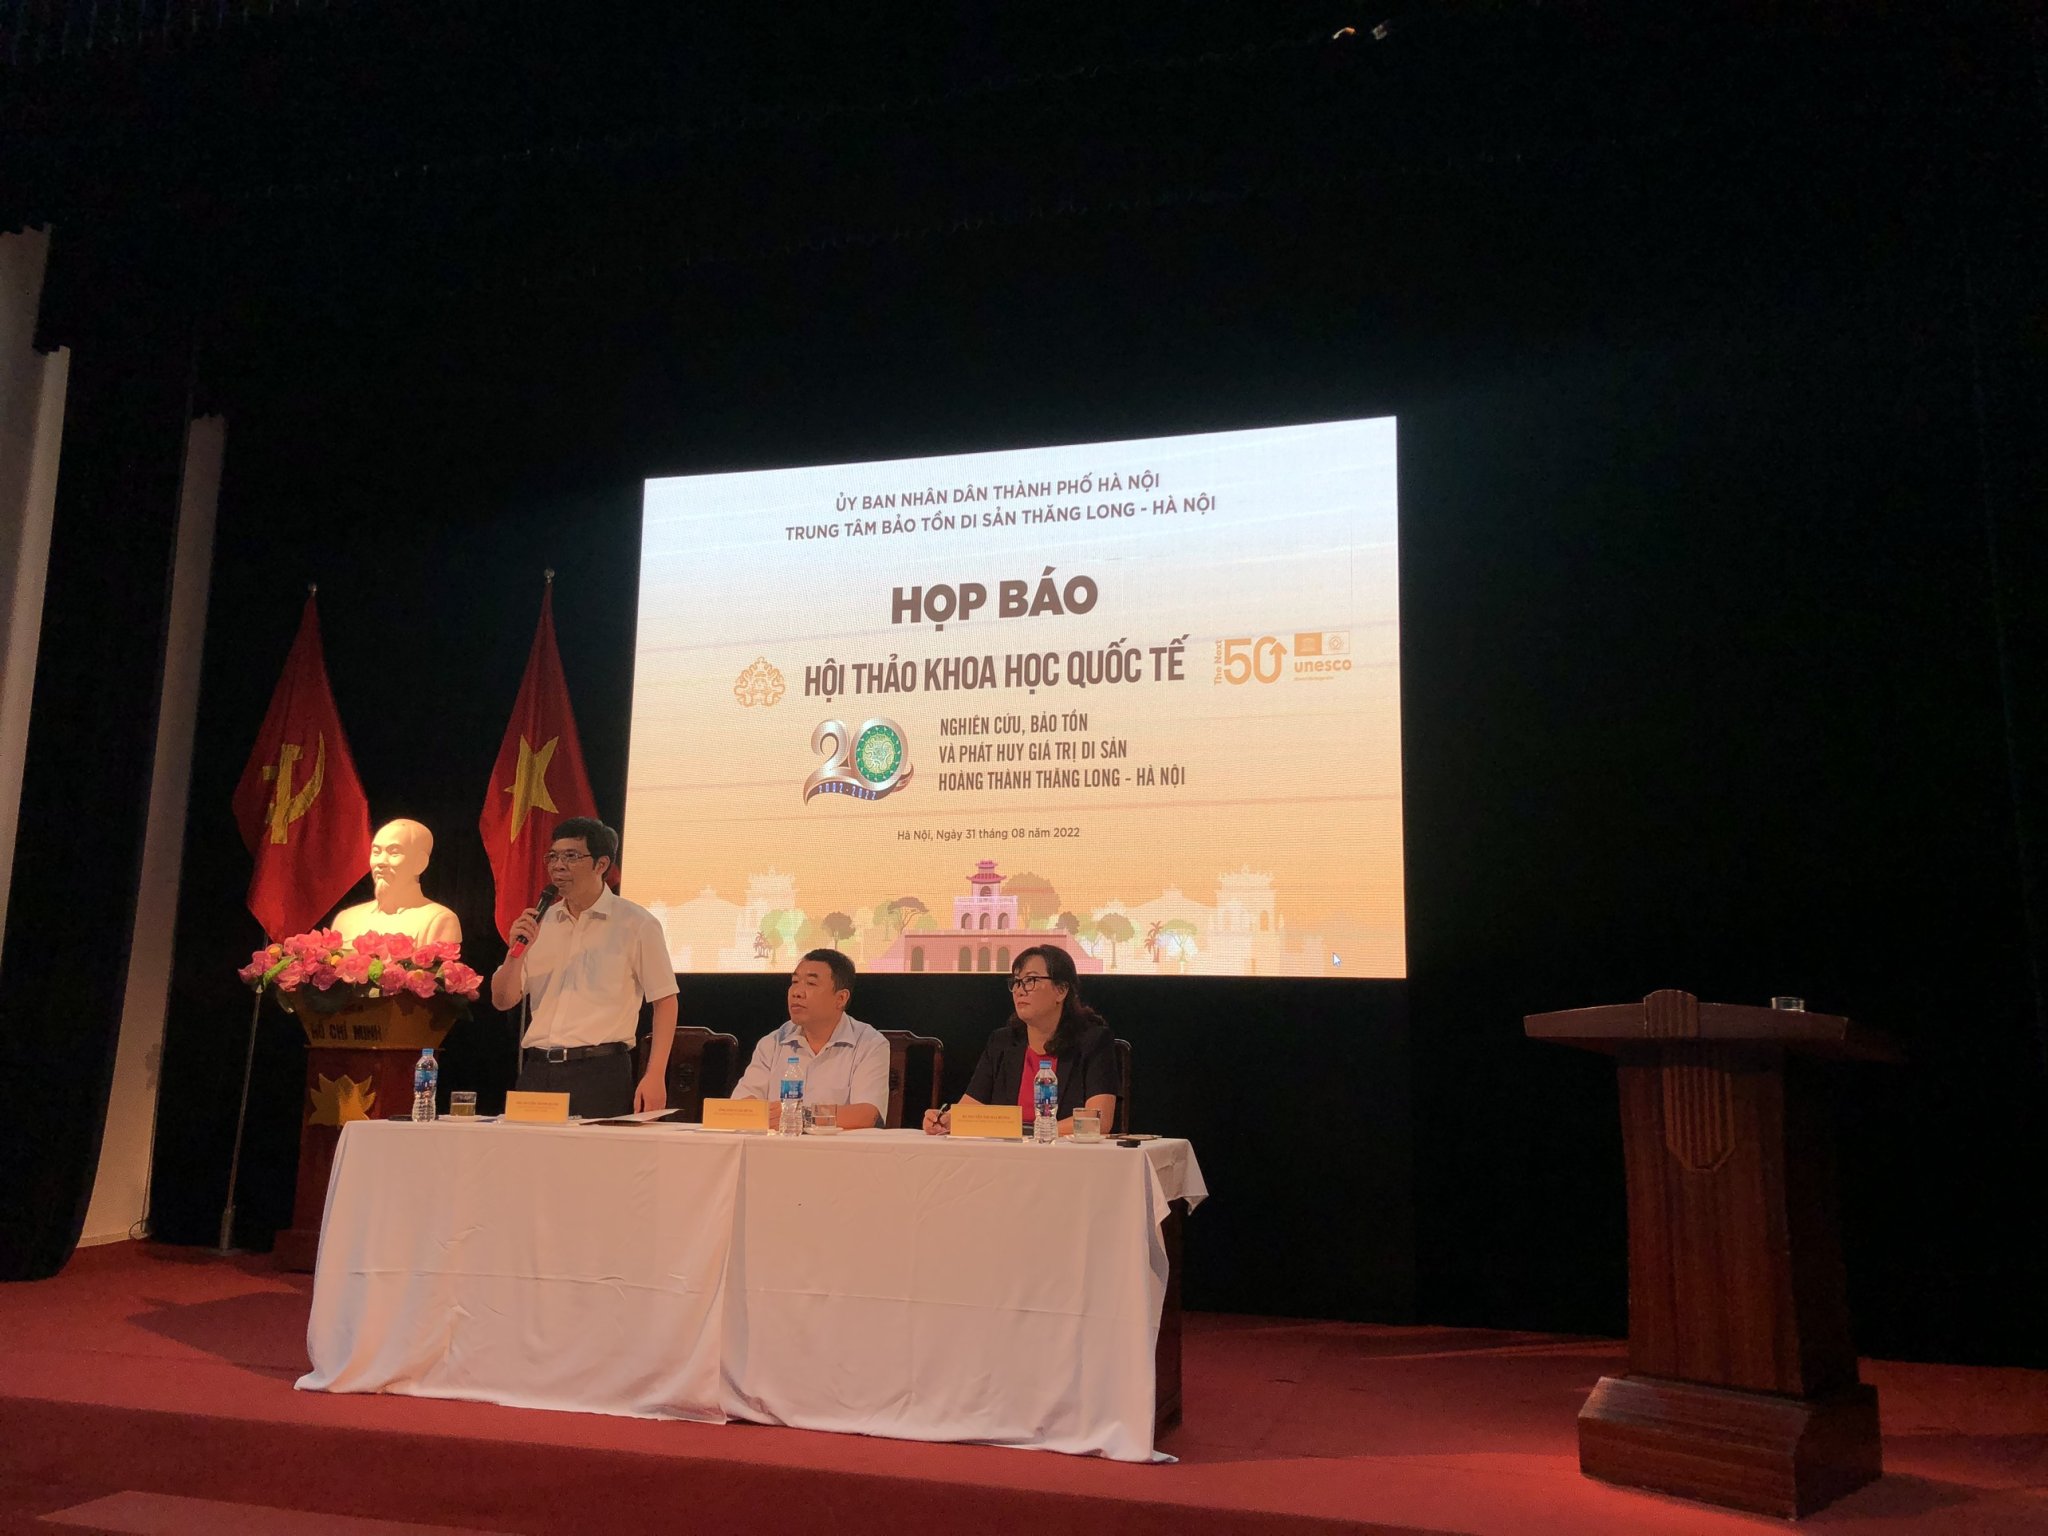  Giám đốc Trung tâm Bảo tồn Di sản Thăng Long - Hà Nội Nguyễn Thanh Quang chia sẻ tại họp báo